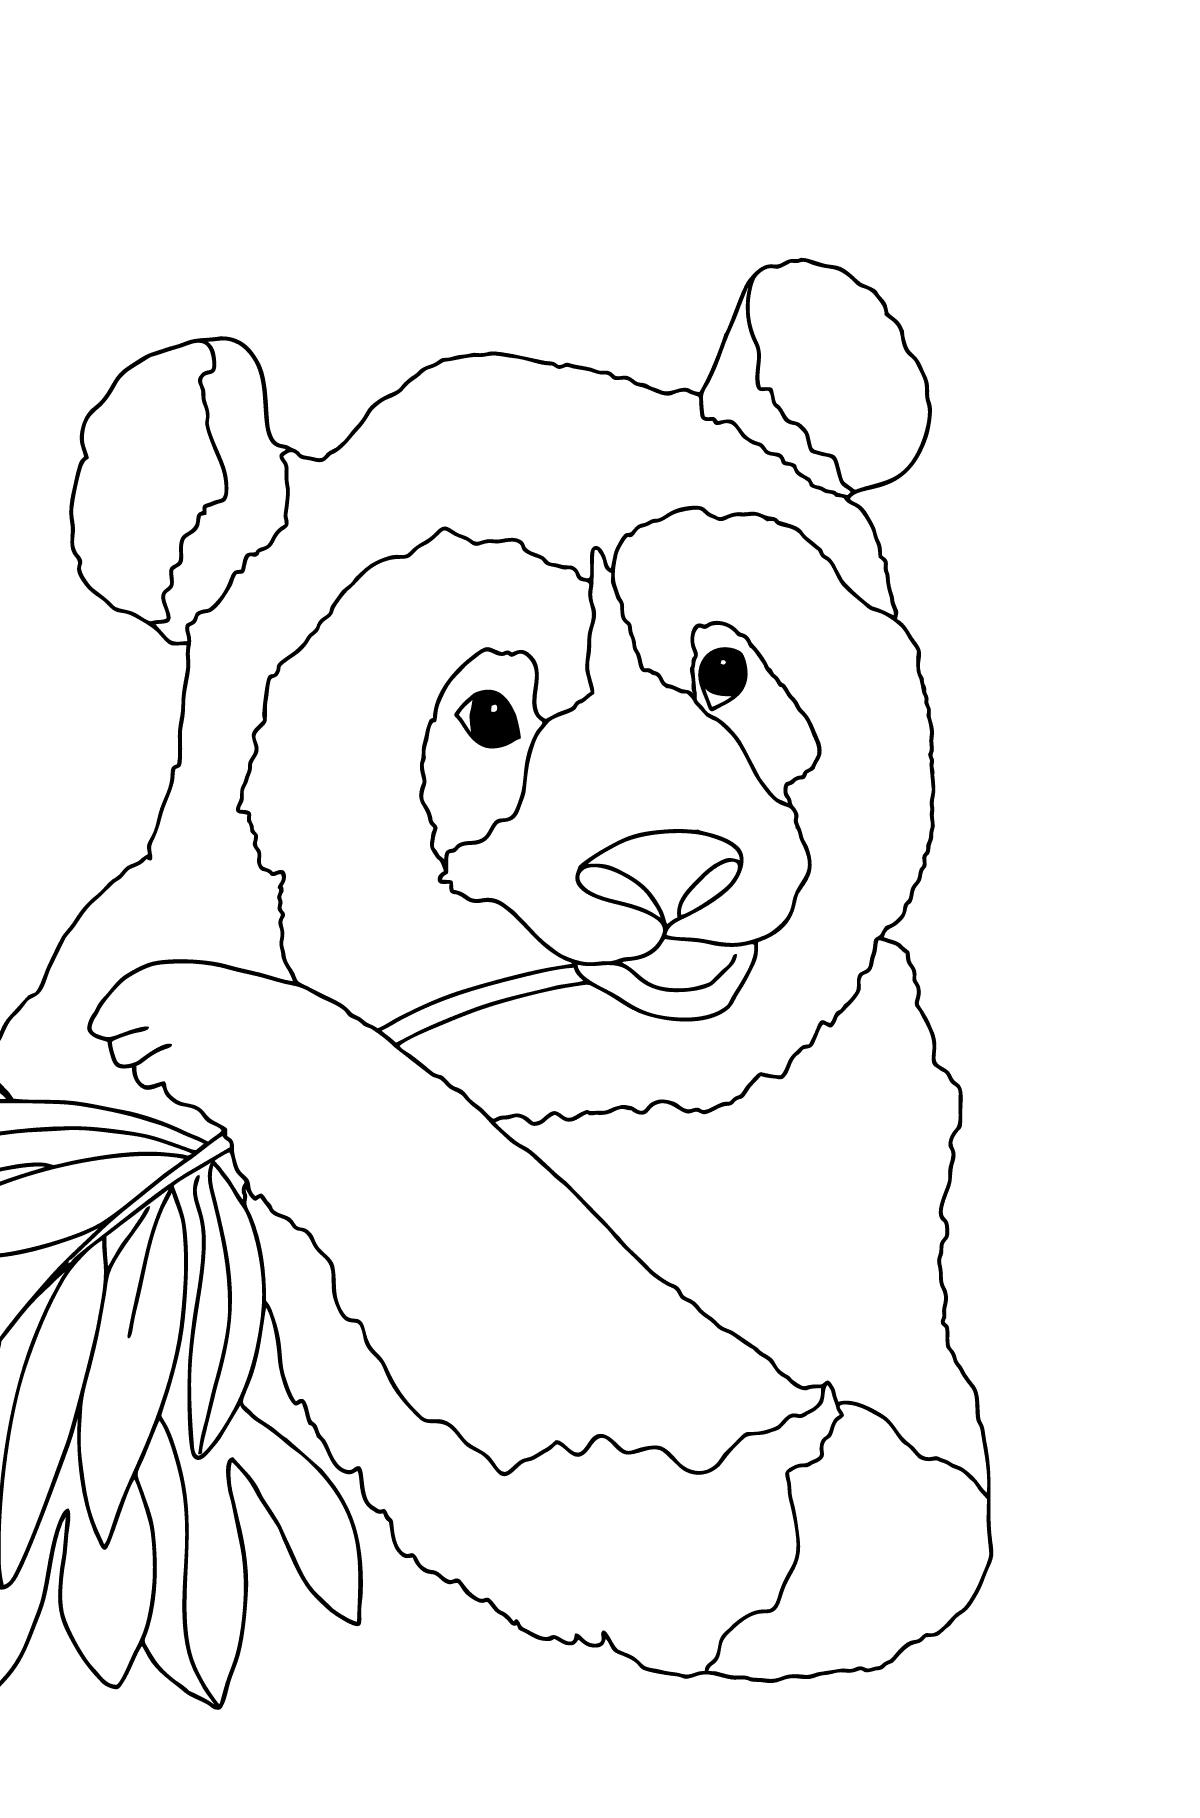 Tegning til fargelegging vakker panda (vanskelig) - Tegninger til fargelegging for barn